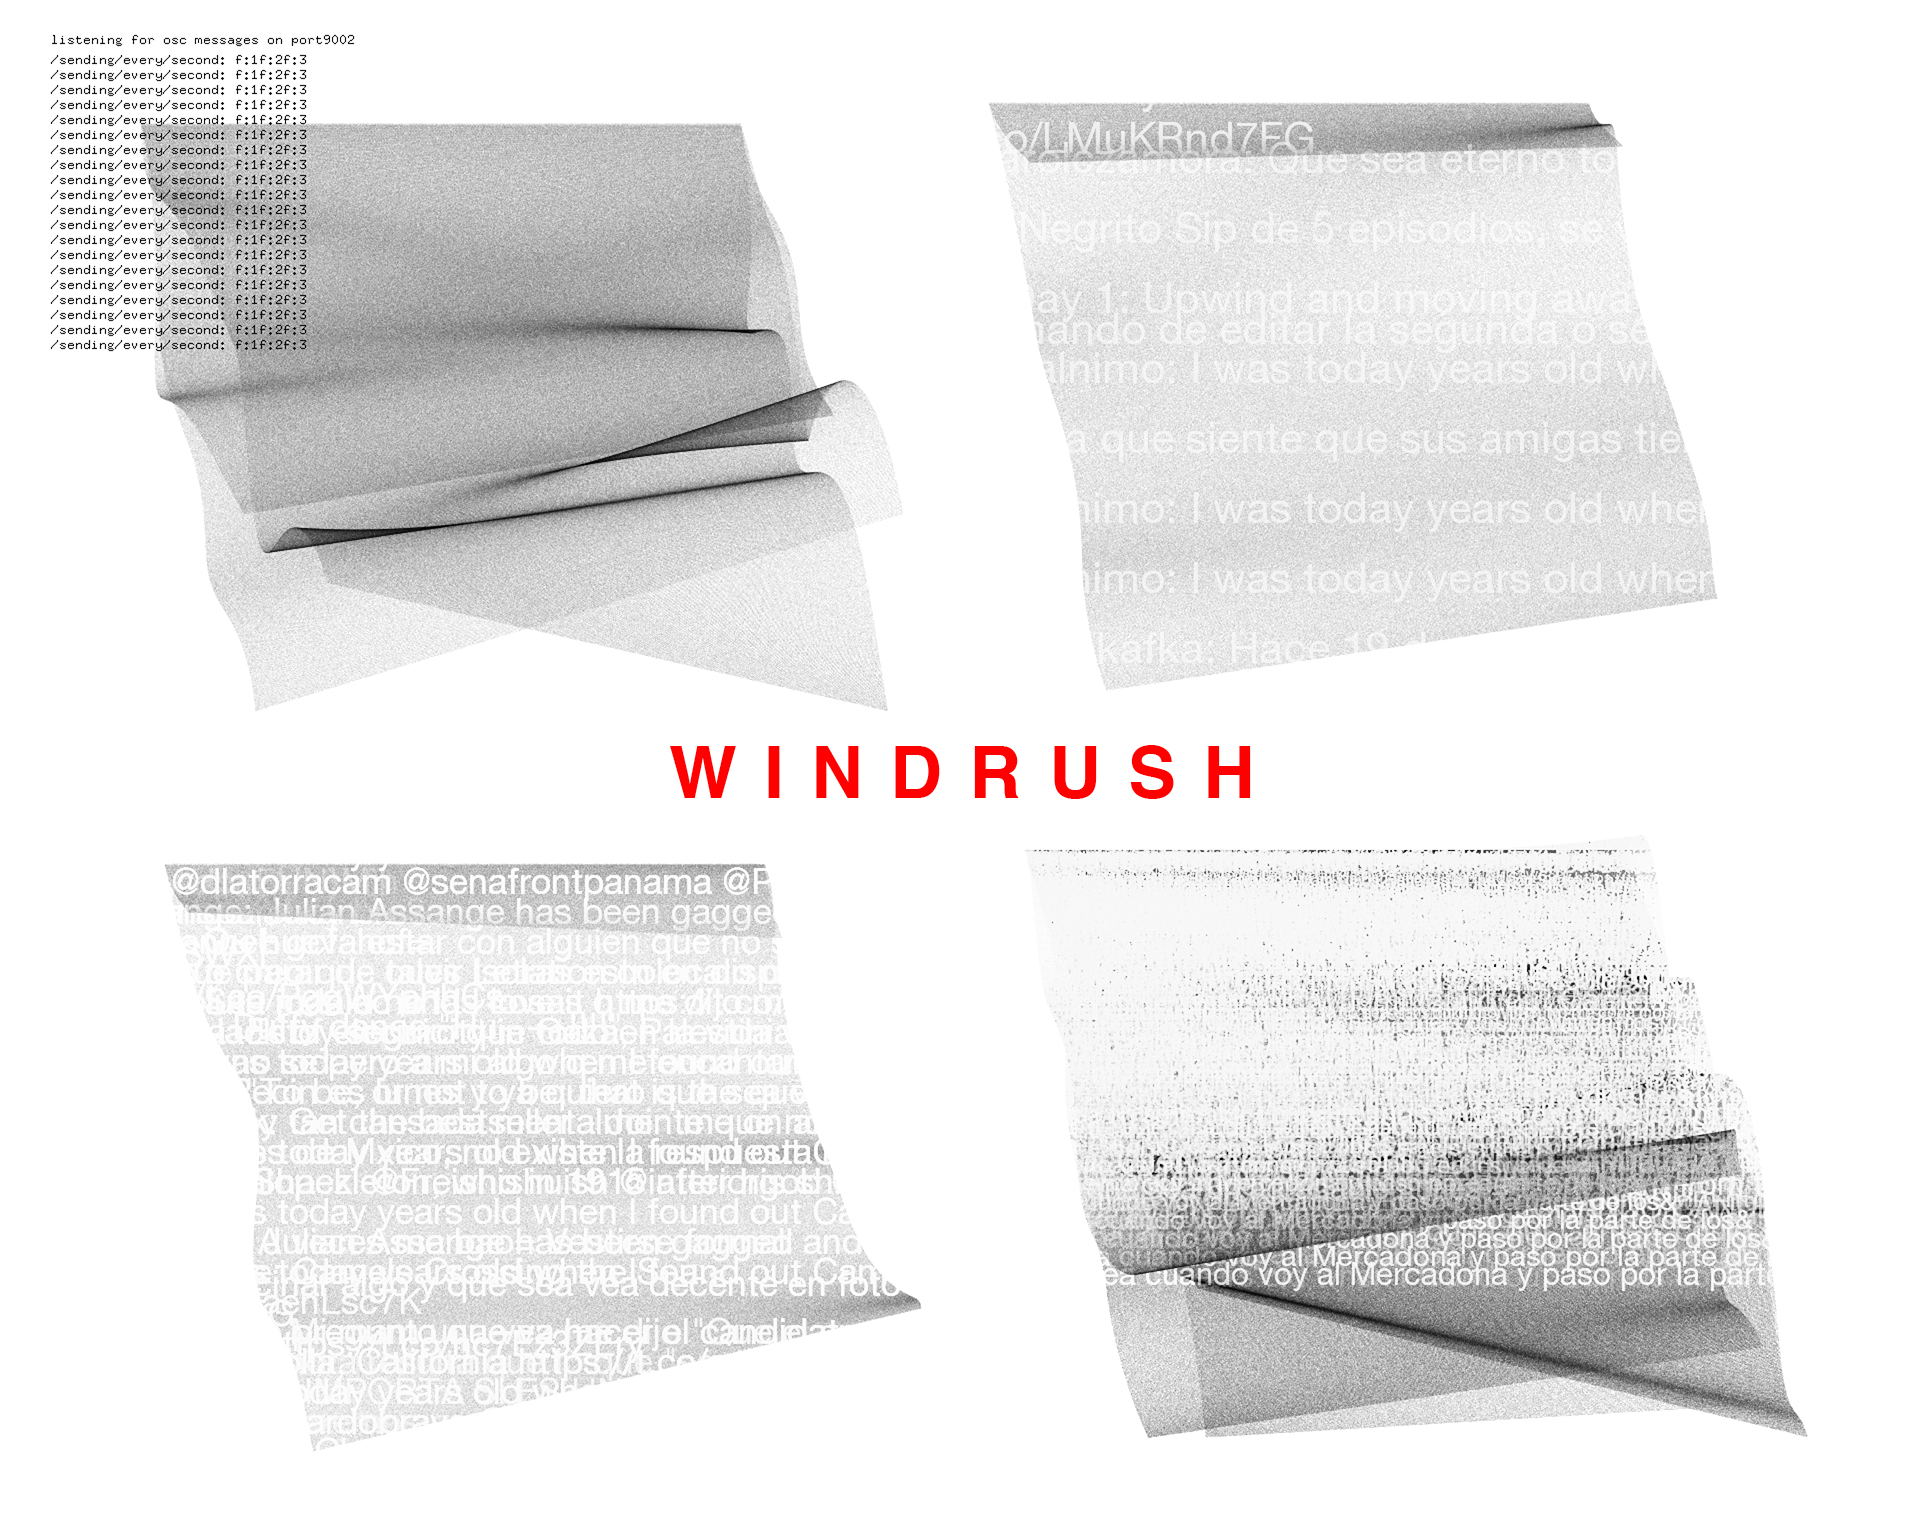 windrush_img1